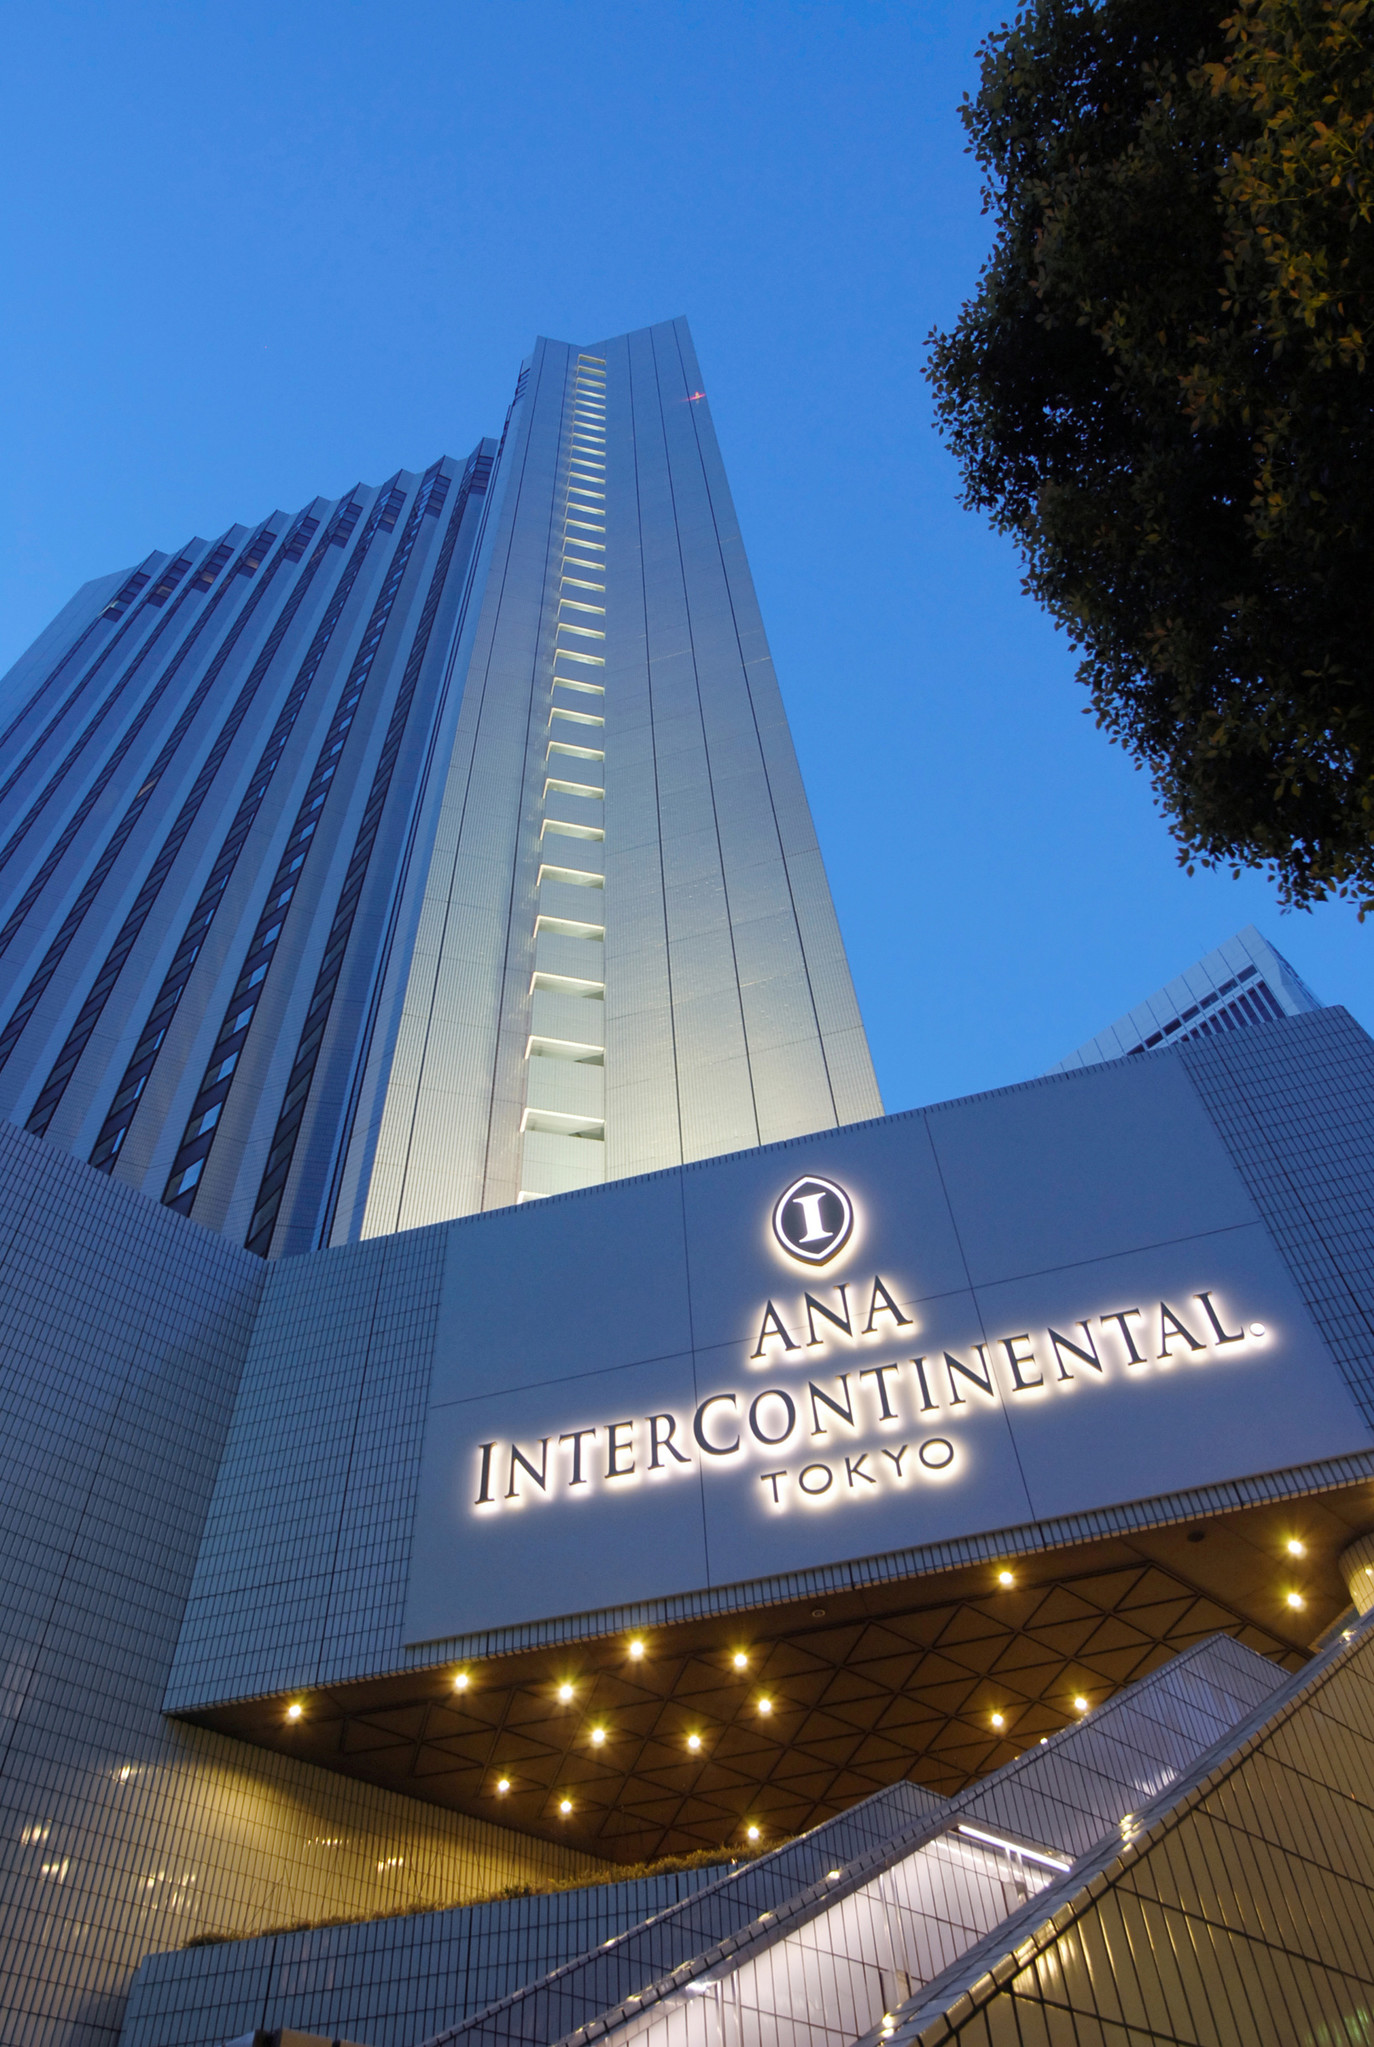 「ANAインターコンチネンタルホテル東京」のウェディング事業を受託